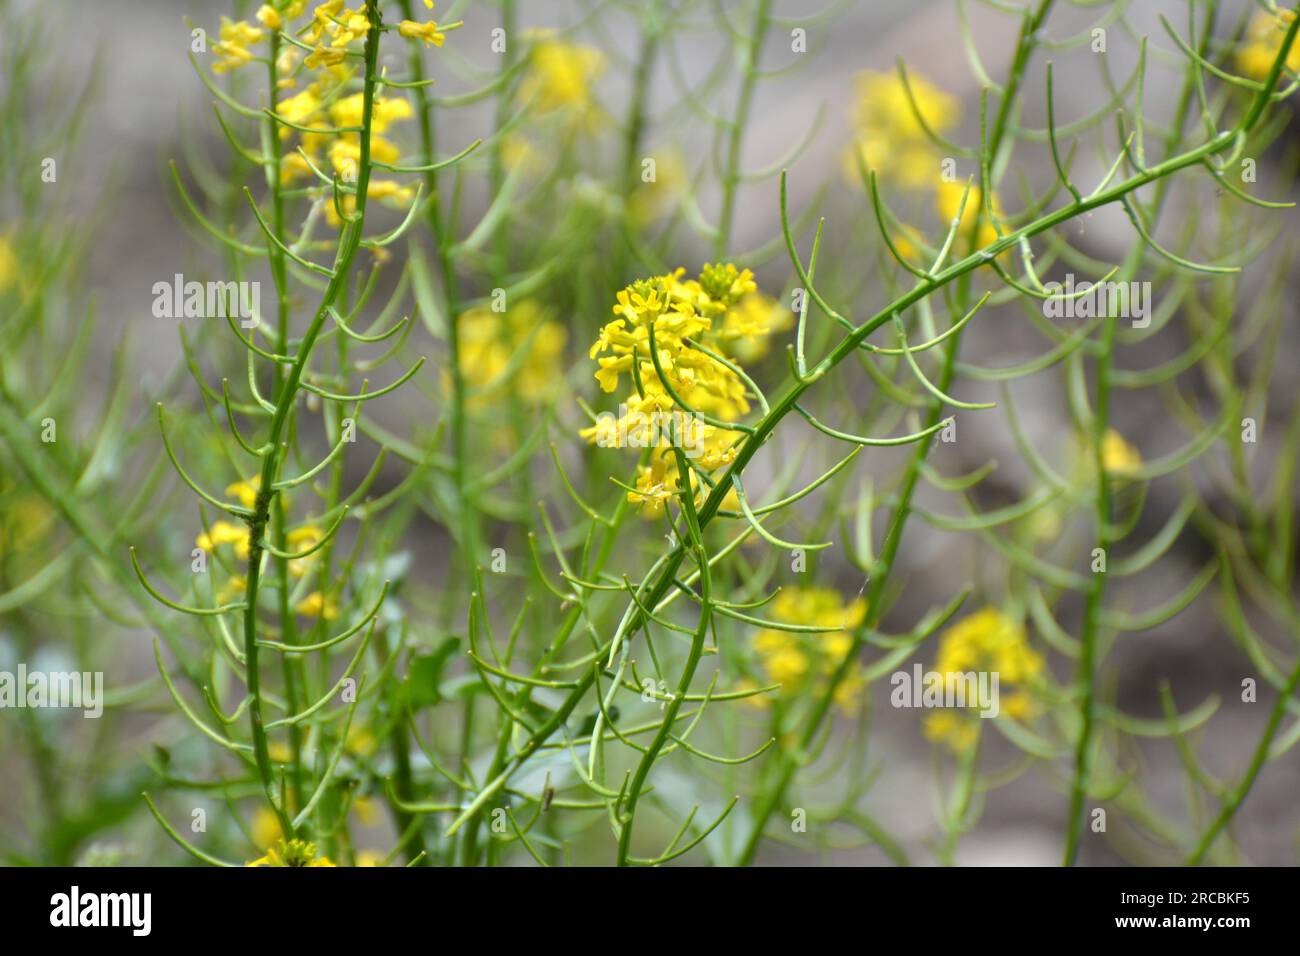 La rapa selvatica (Barbarea vulgaris) fiorisce in natura tra le erbe. Foto Stock